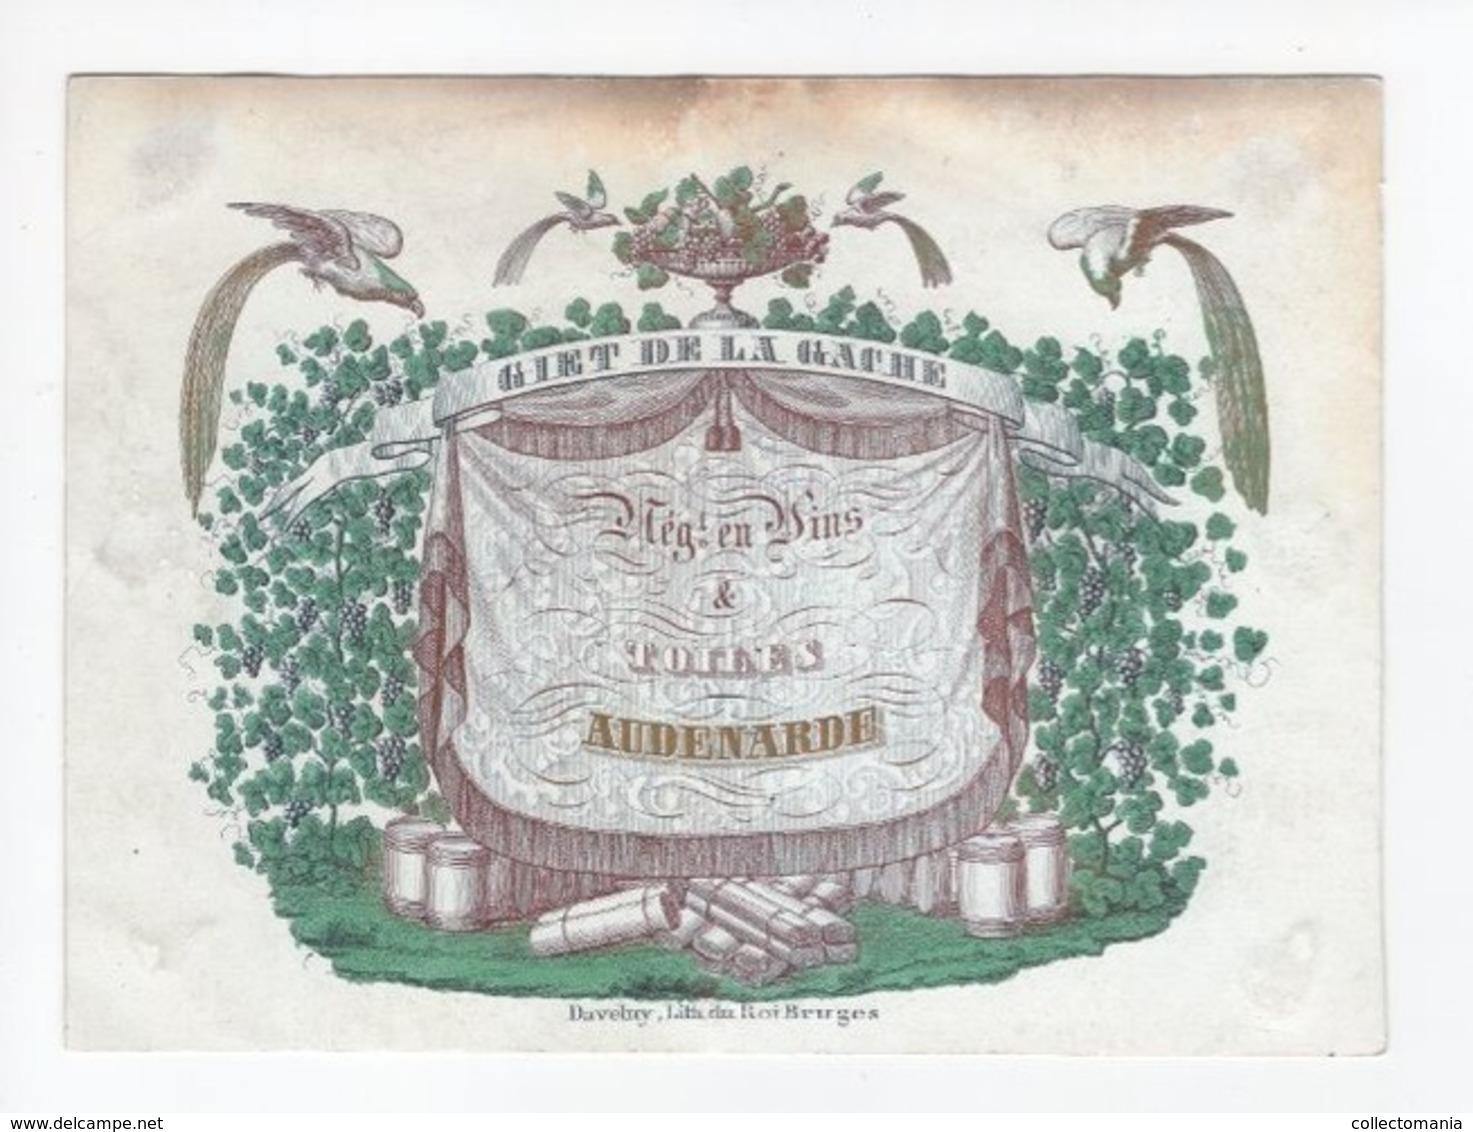 1 Carte Porcelaine  Vins & Toiles  Giet De La Gache  Audenarde Audenaarde Lith.Daveluy Bruges  Afm.:15,5x11,5cm  Ca 1850 - Porcelana